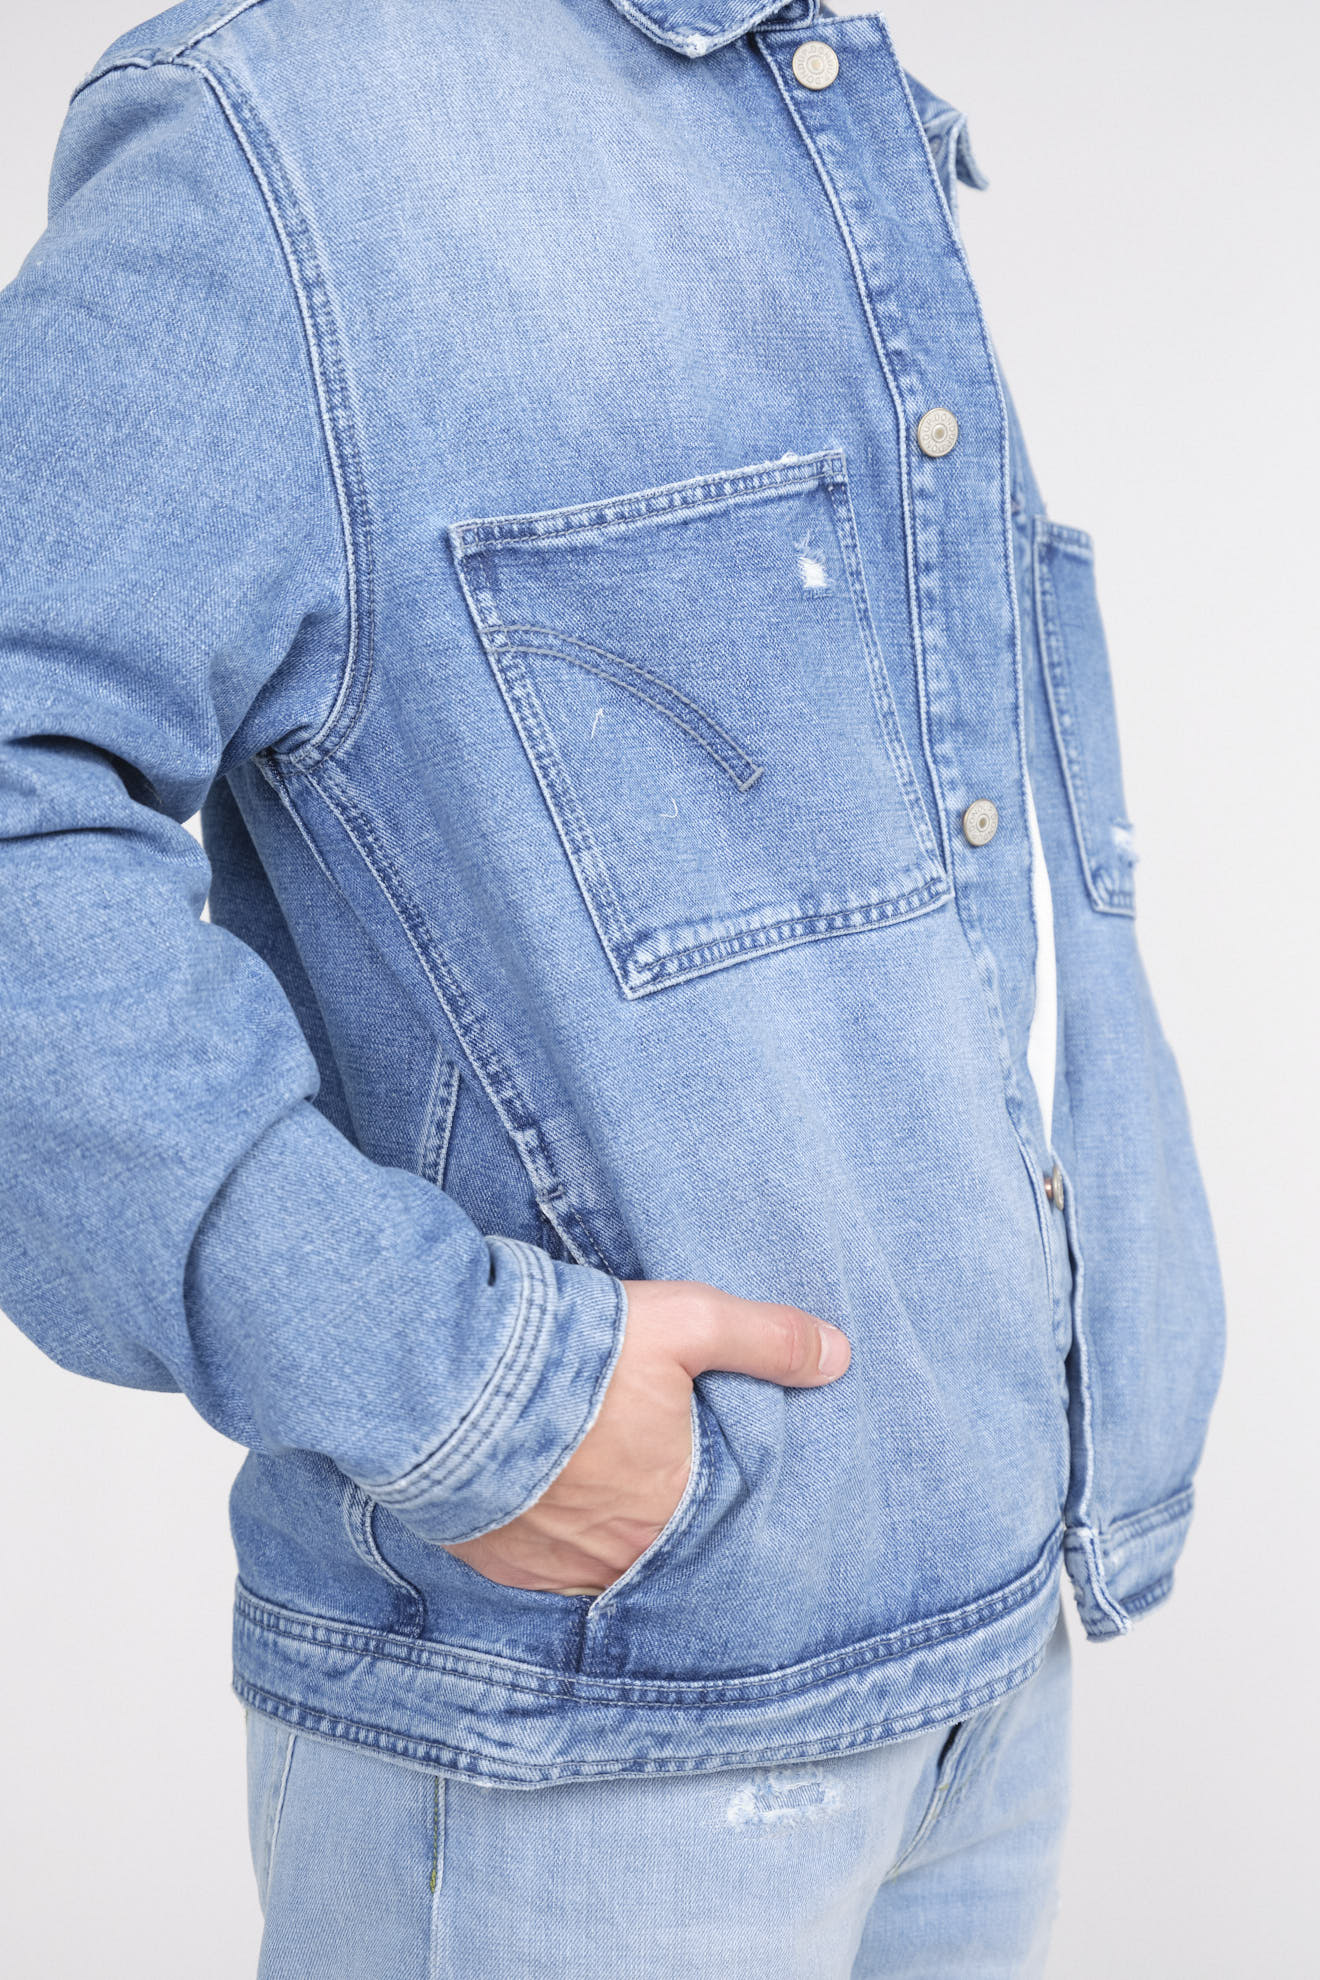 Dondup Jeansjacke mit Knopfleiste und zwei Brusttaschen  blau 52